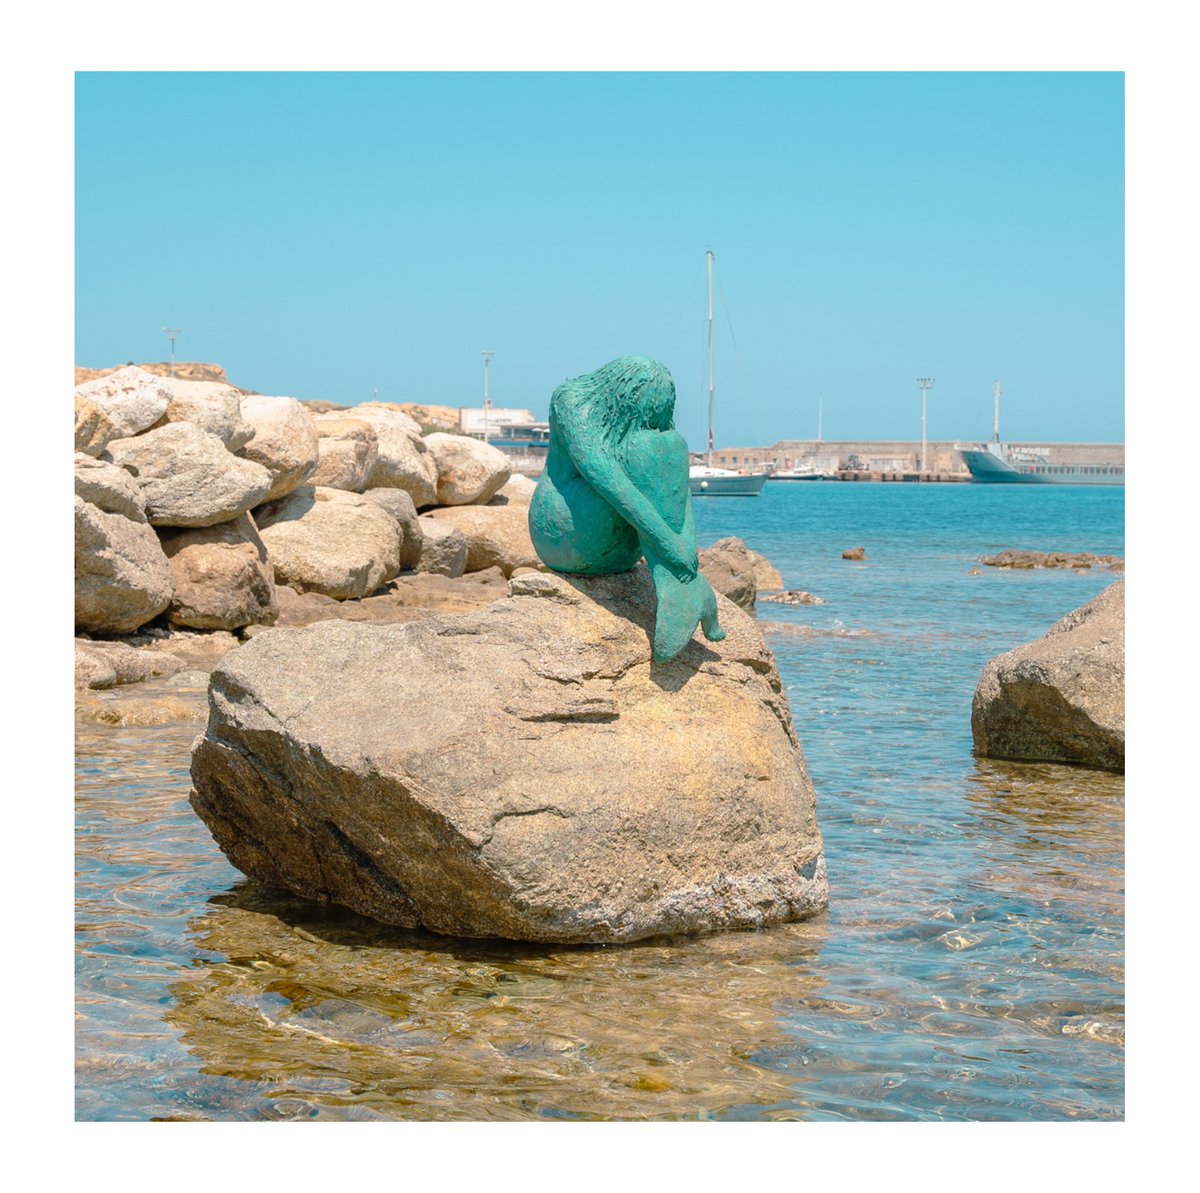 A Sirinella di l’Isula Rossa 🧜

Discreta e silenziosa come tutte le creature leggendarie, la sirena si è seduta su una roccia di granito.

📸©️ ALOIS BOLOU

#visitcorsica #corsica #michjamucorsica #mare #isolarossa